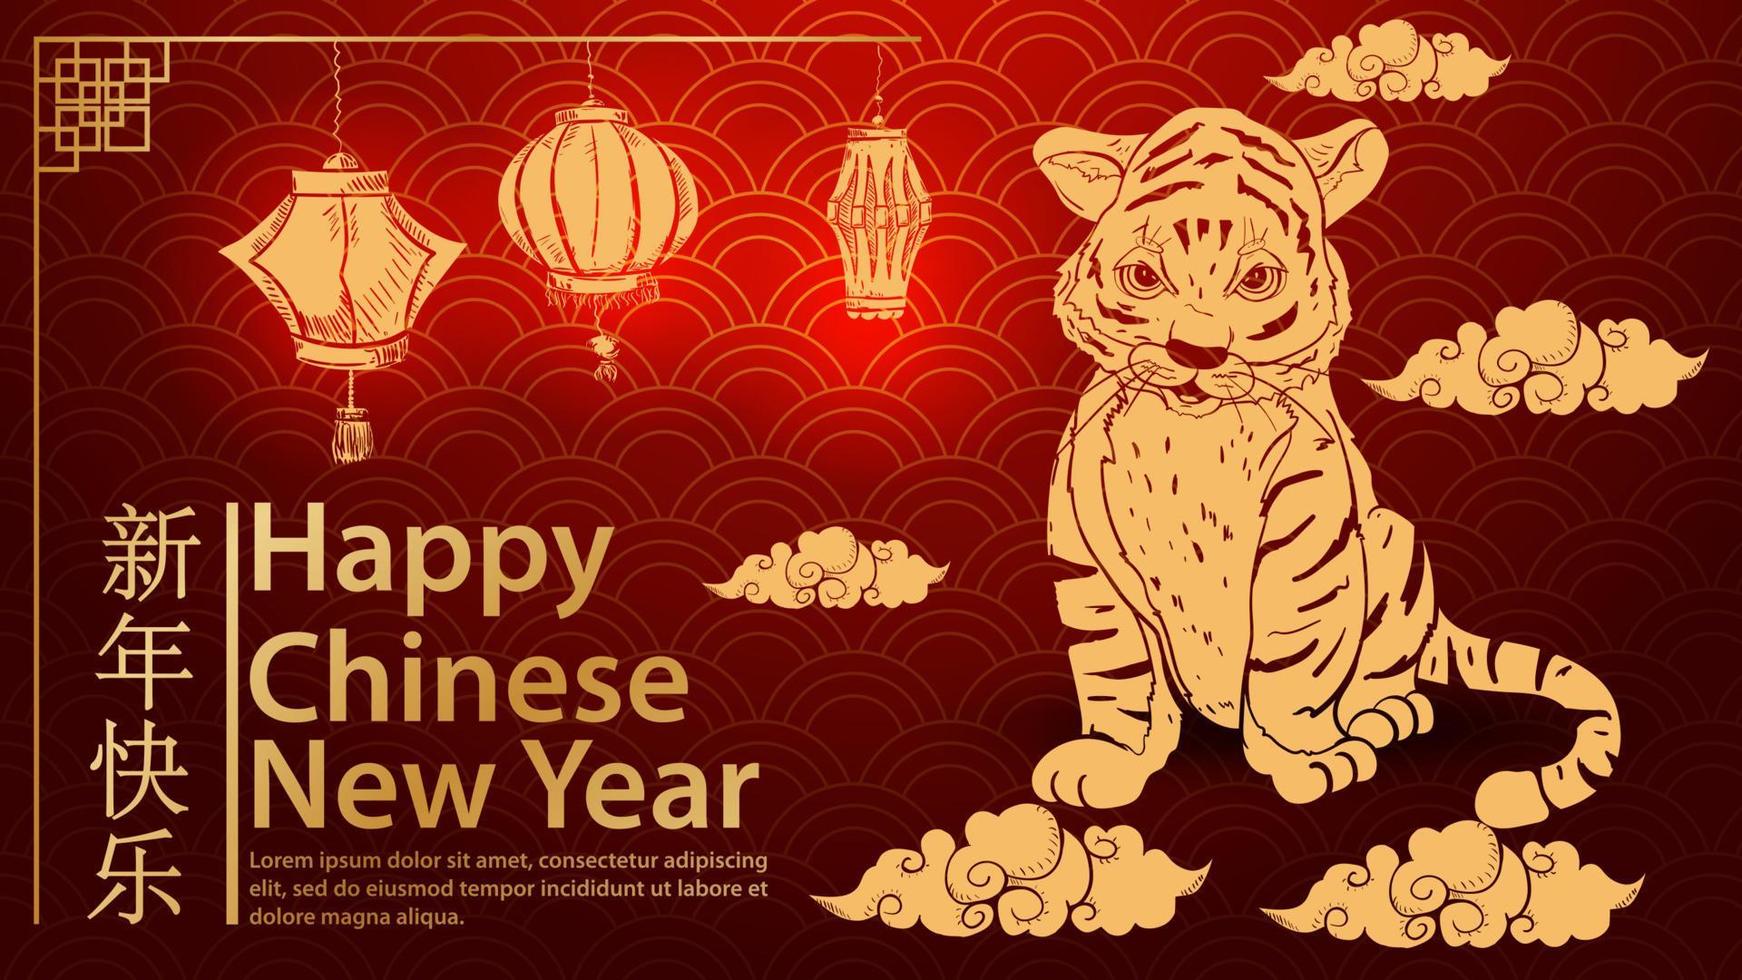 un piccolo cucciolo di tigre sorride seduto sulle nuvole il simbolo del capodanno cinese e la scritta congratulazioni sfondo rosso onda vettore